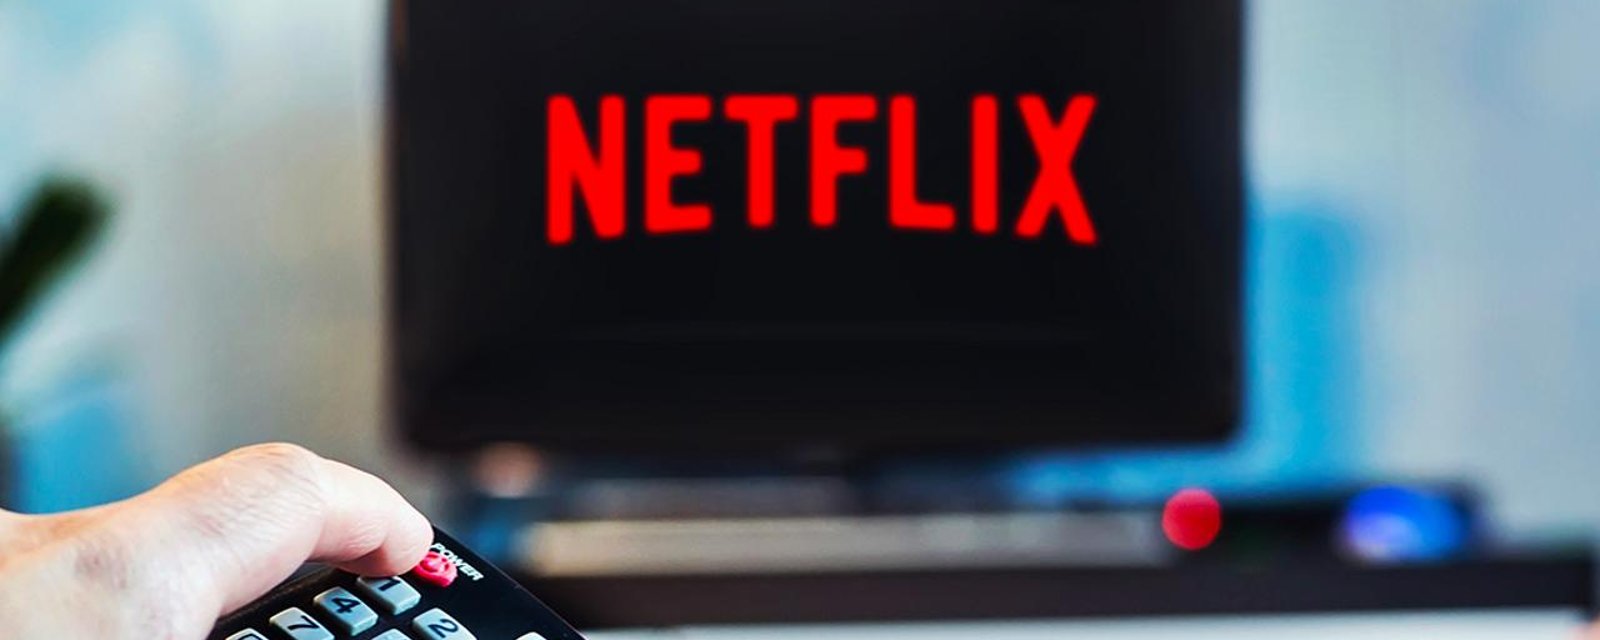 Les Québécois se désabonnent massivement de Netflix.